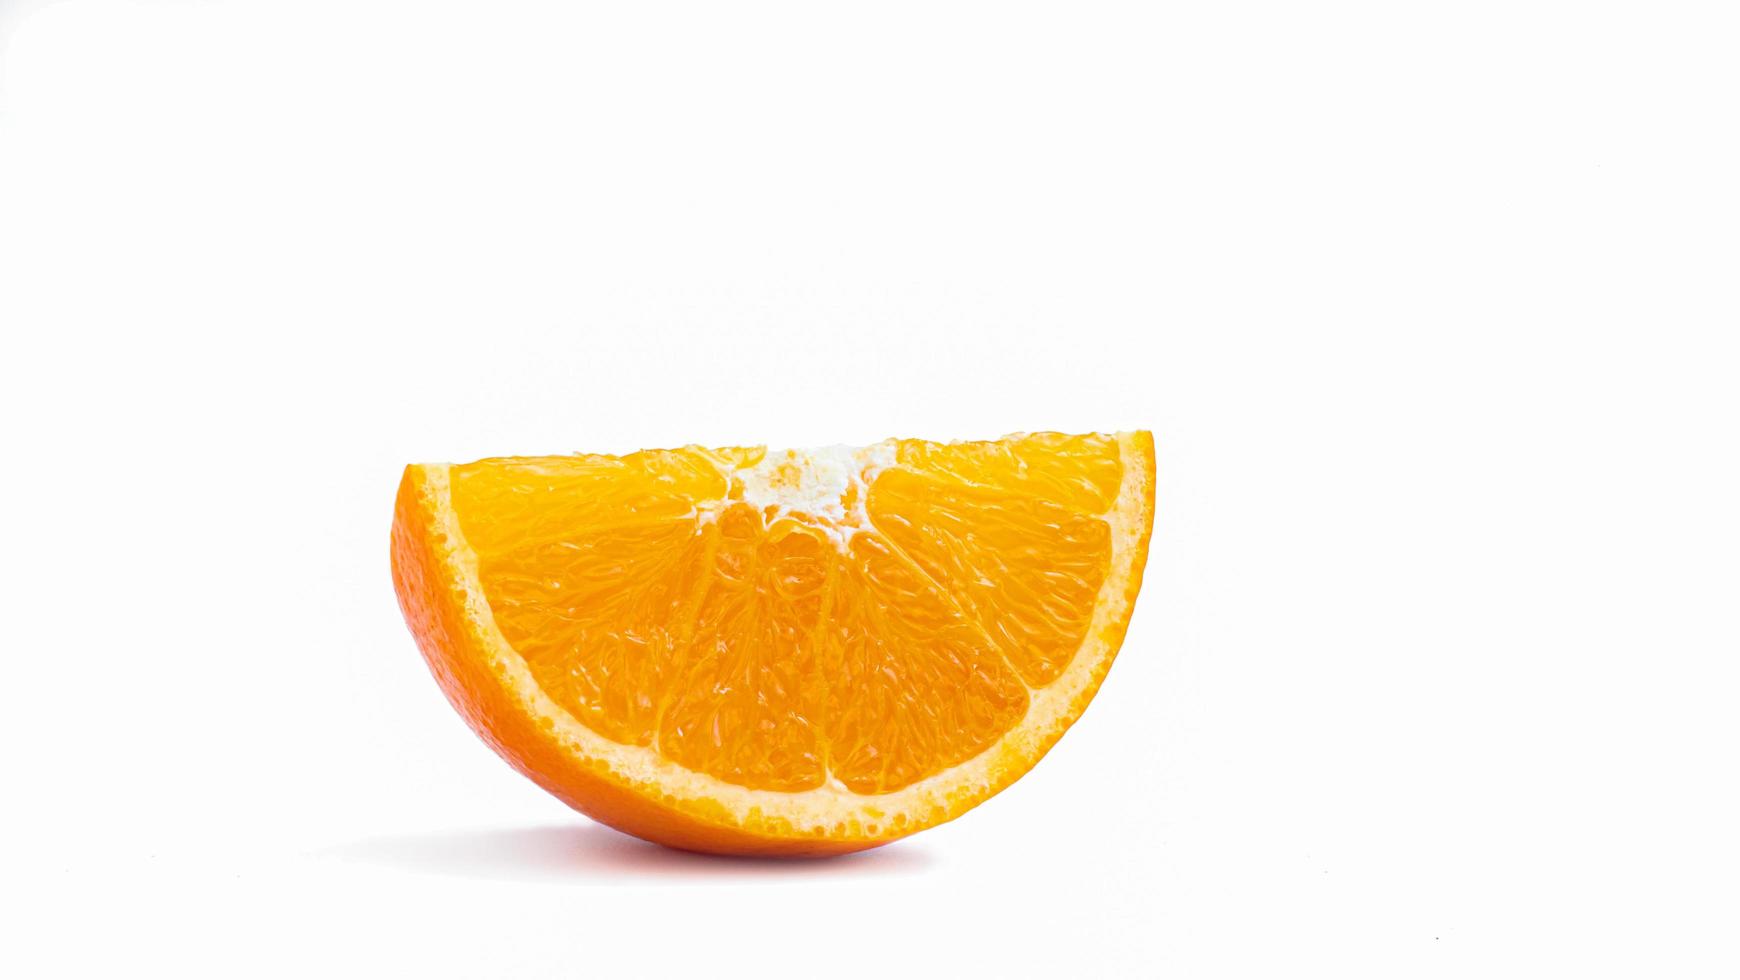 snij doormidden en snijd een rijp oranje fruit met goudgele schil. geïsoleerd op een witte achtergrond met schaduw. foto